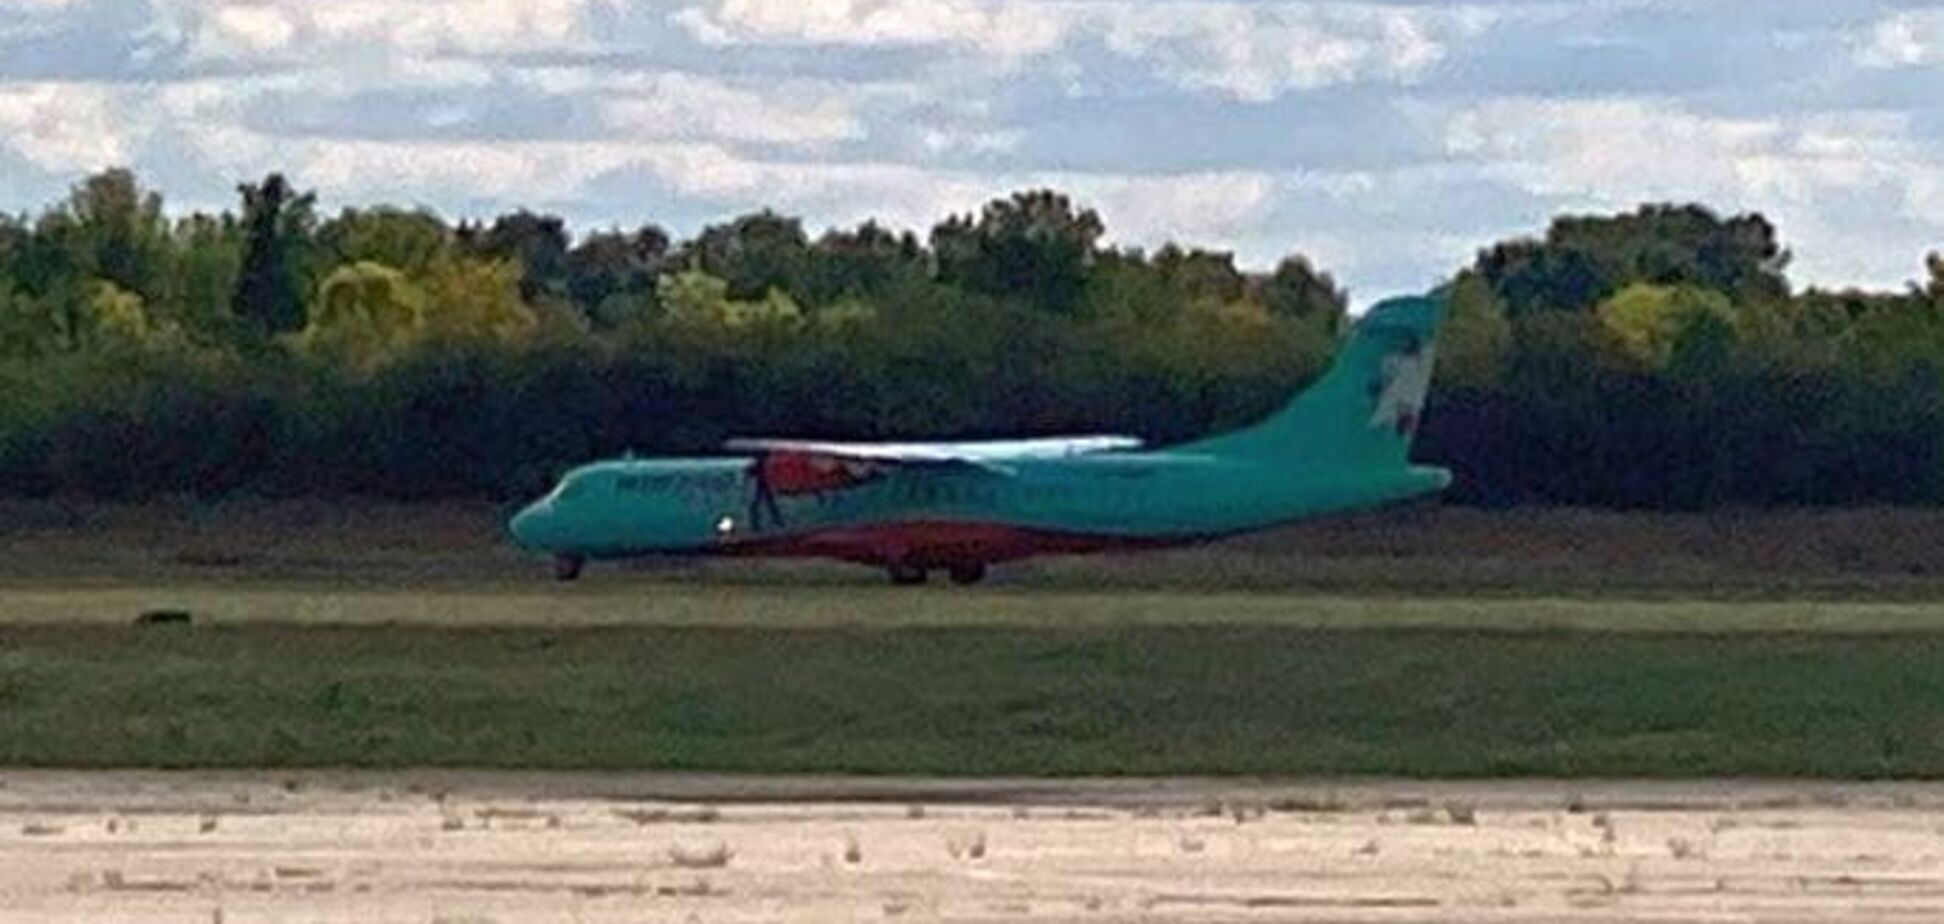 Нардепов от ОПЗЖ не выпустили из самолета в Полтаве: СМИ узнали подробности скандала